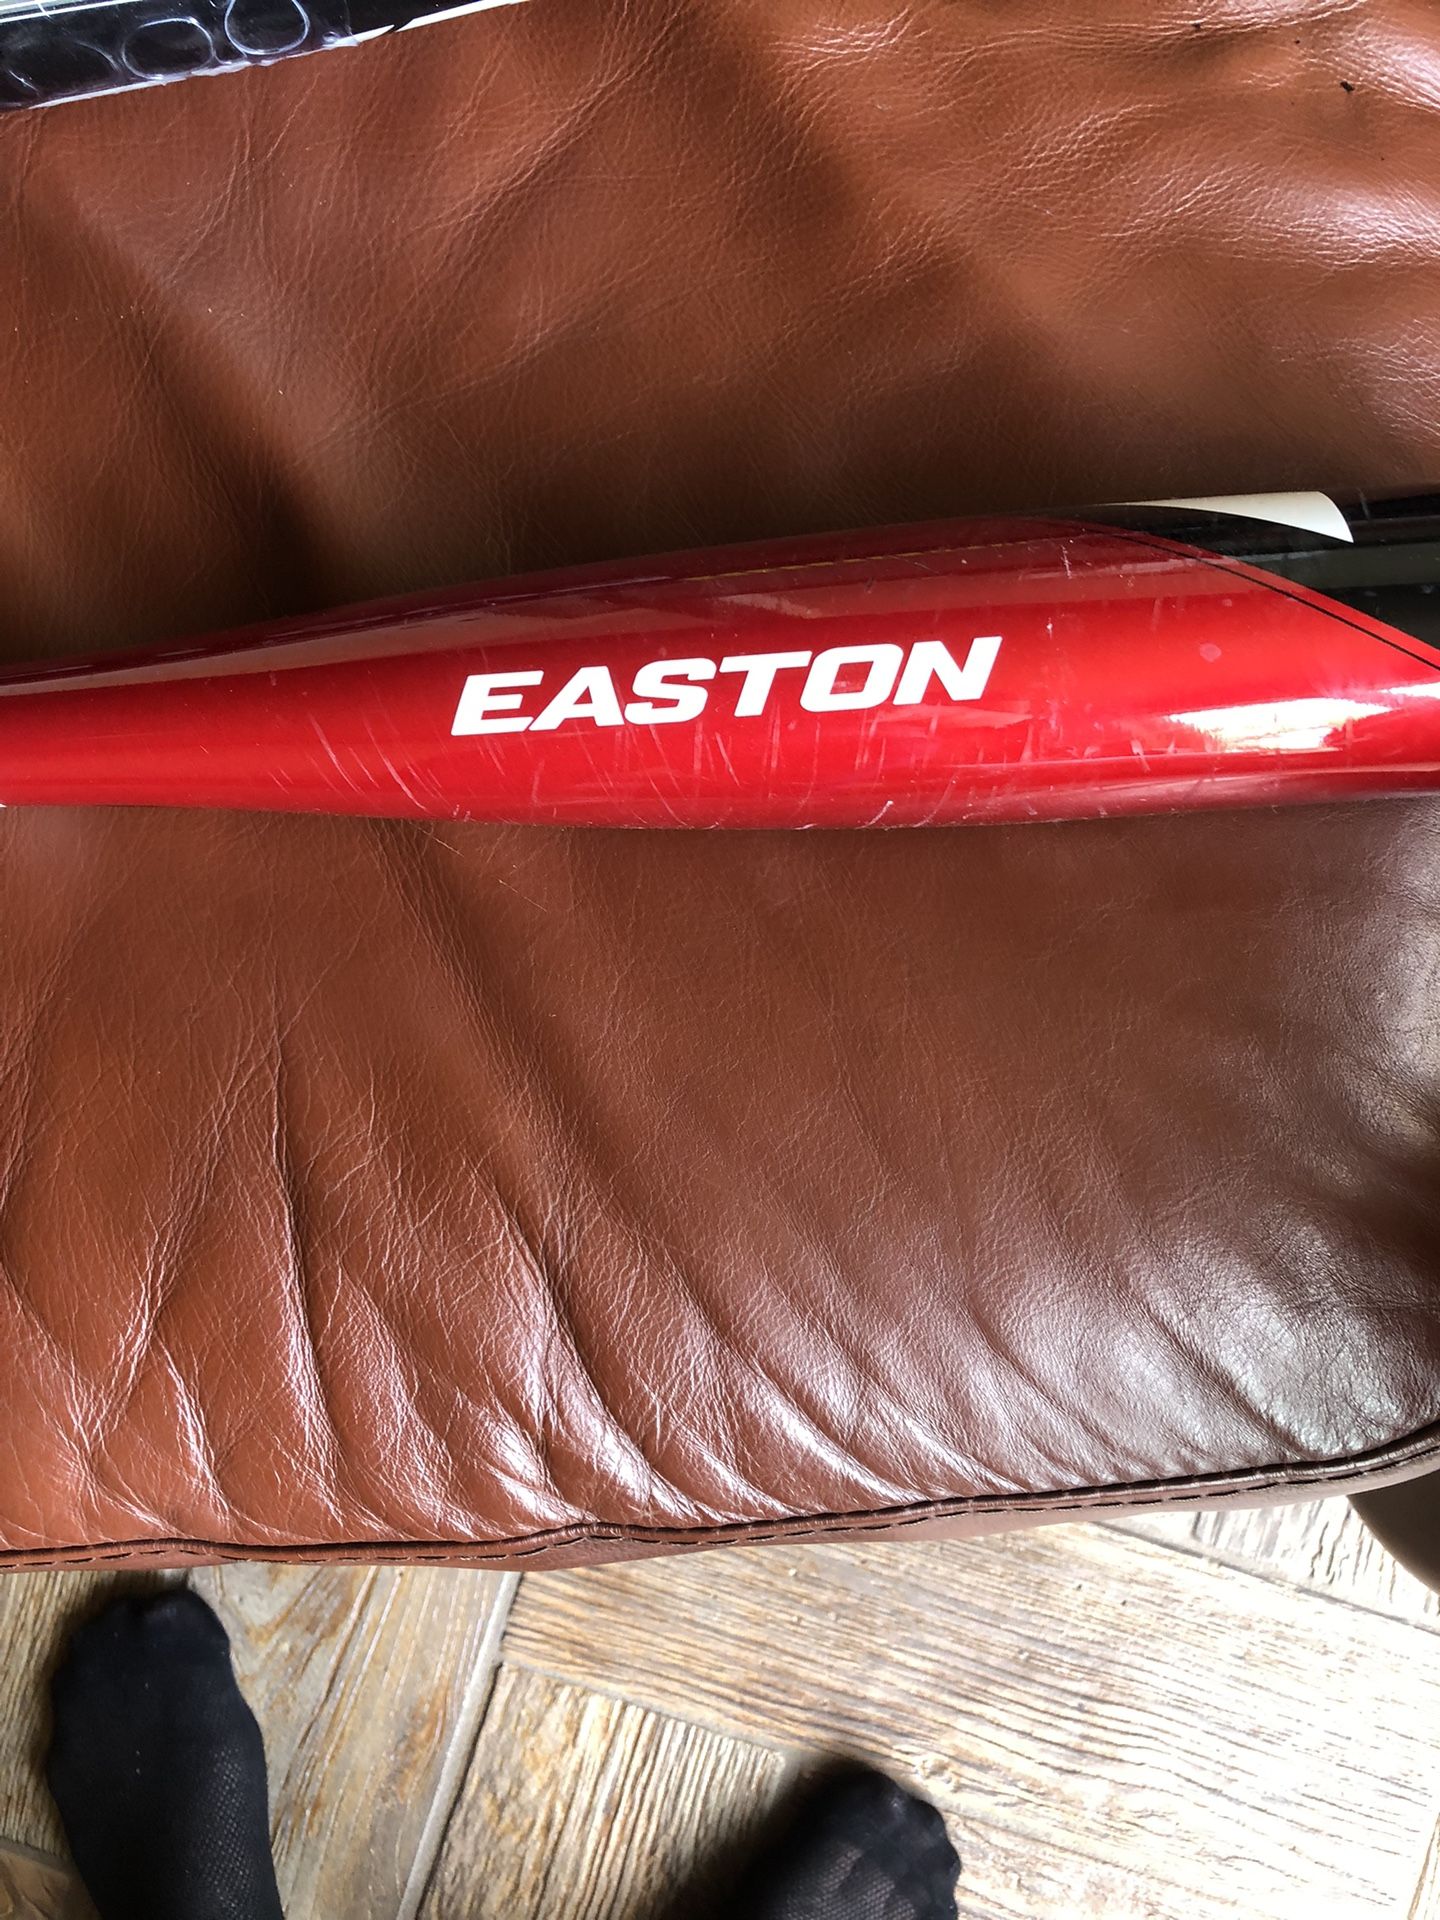 Easton Drop -10 Baseball Bat